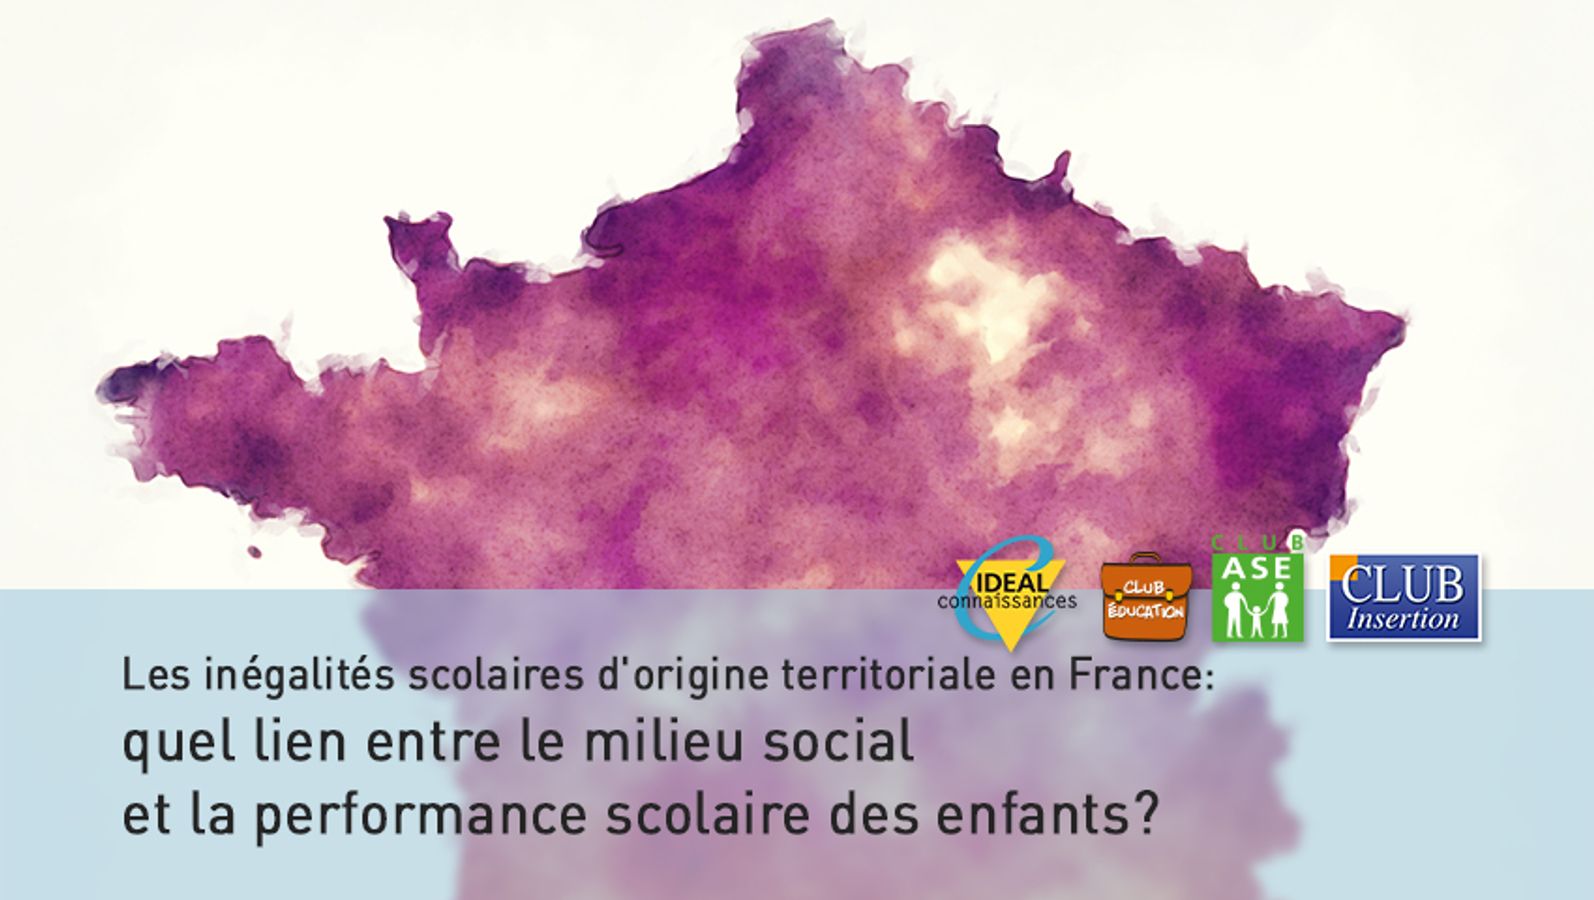 Les inégalités scolaires d'origine territoriale en France: quel lien entre le milieu social et la performance scolaire des enfants?